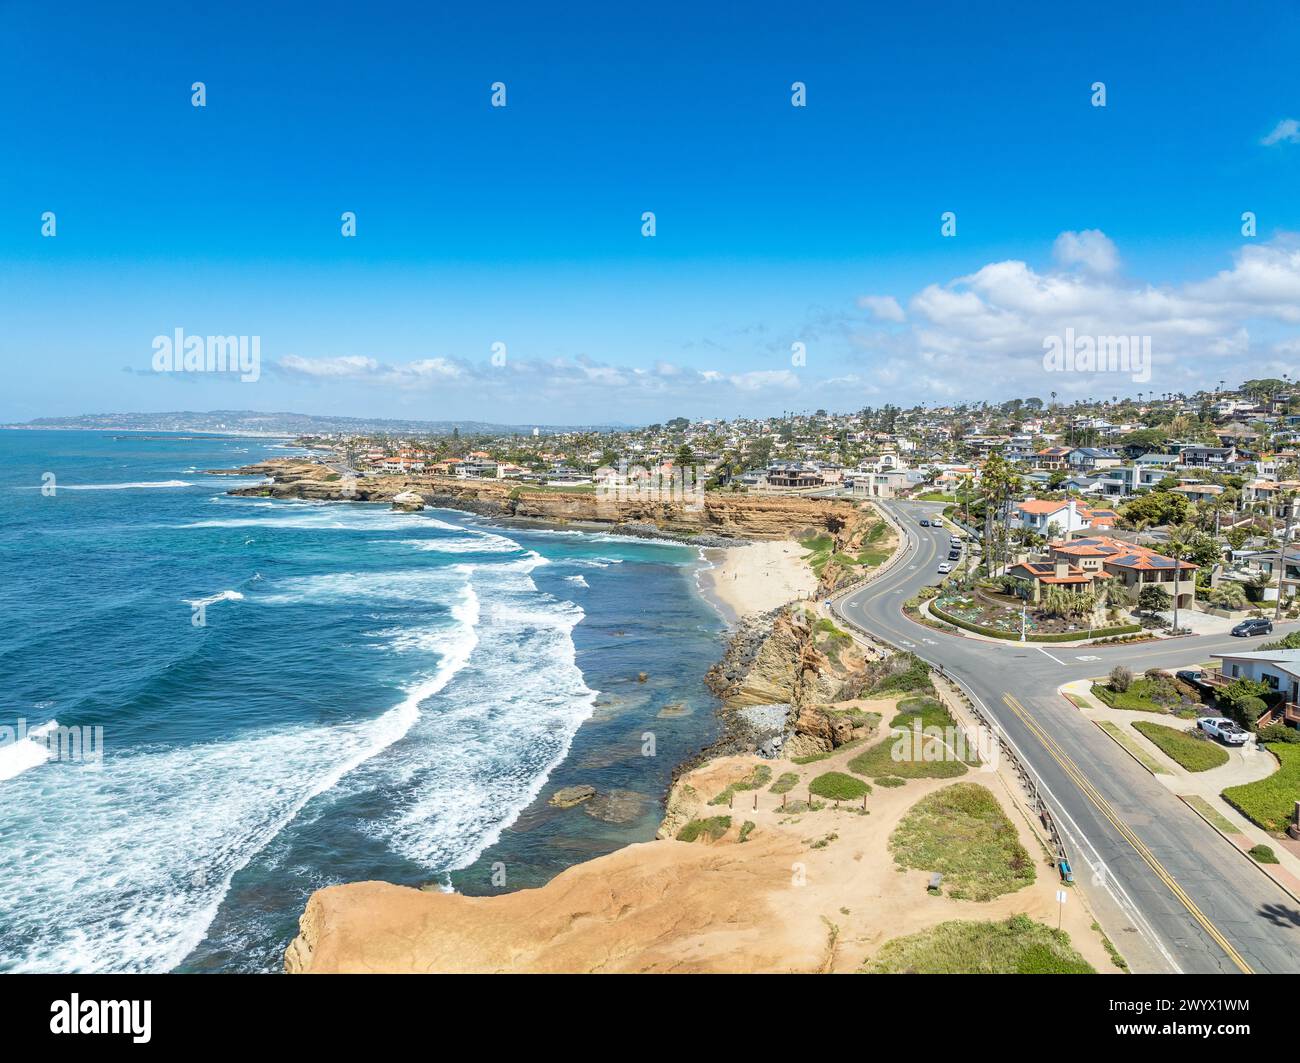 Panorama aereo di Sunset Beach a San Diego con la costa frastagliata dell'oceano californiano, onde schiaccianti, lussuose case per famiglie singole e residenze con po Foto Stock